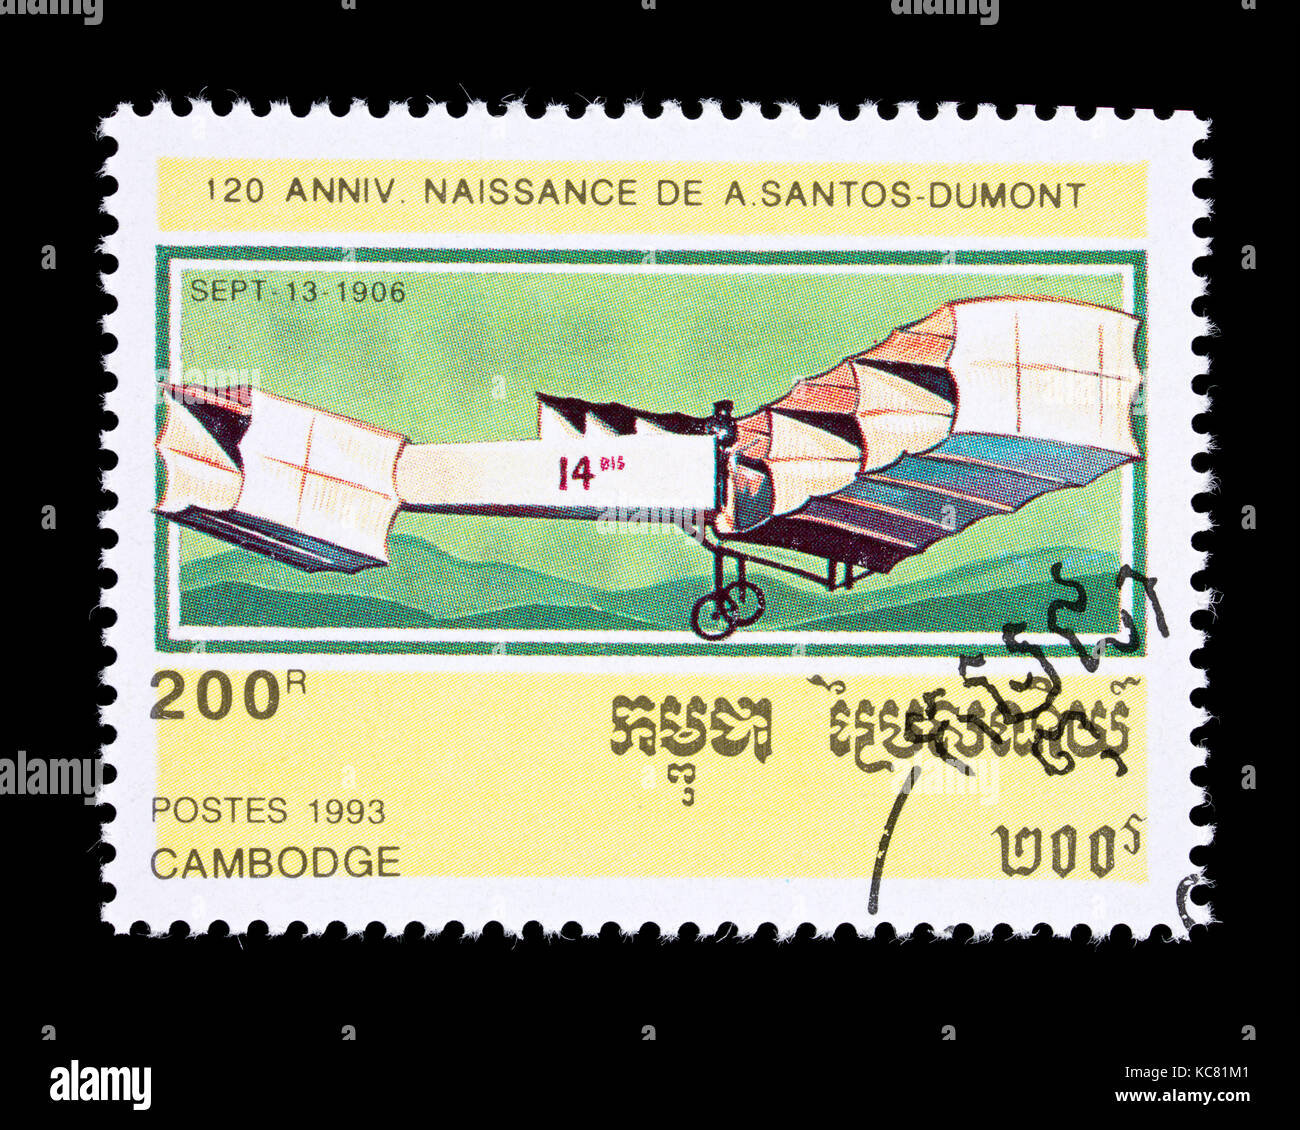 Timbre-poste du Cambodge représentant un avion tôt (14-bis, à partir de 1906), inventé par Alberto Santos-Dumont Banque D'Images